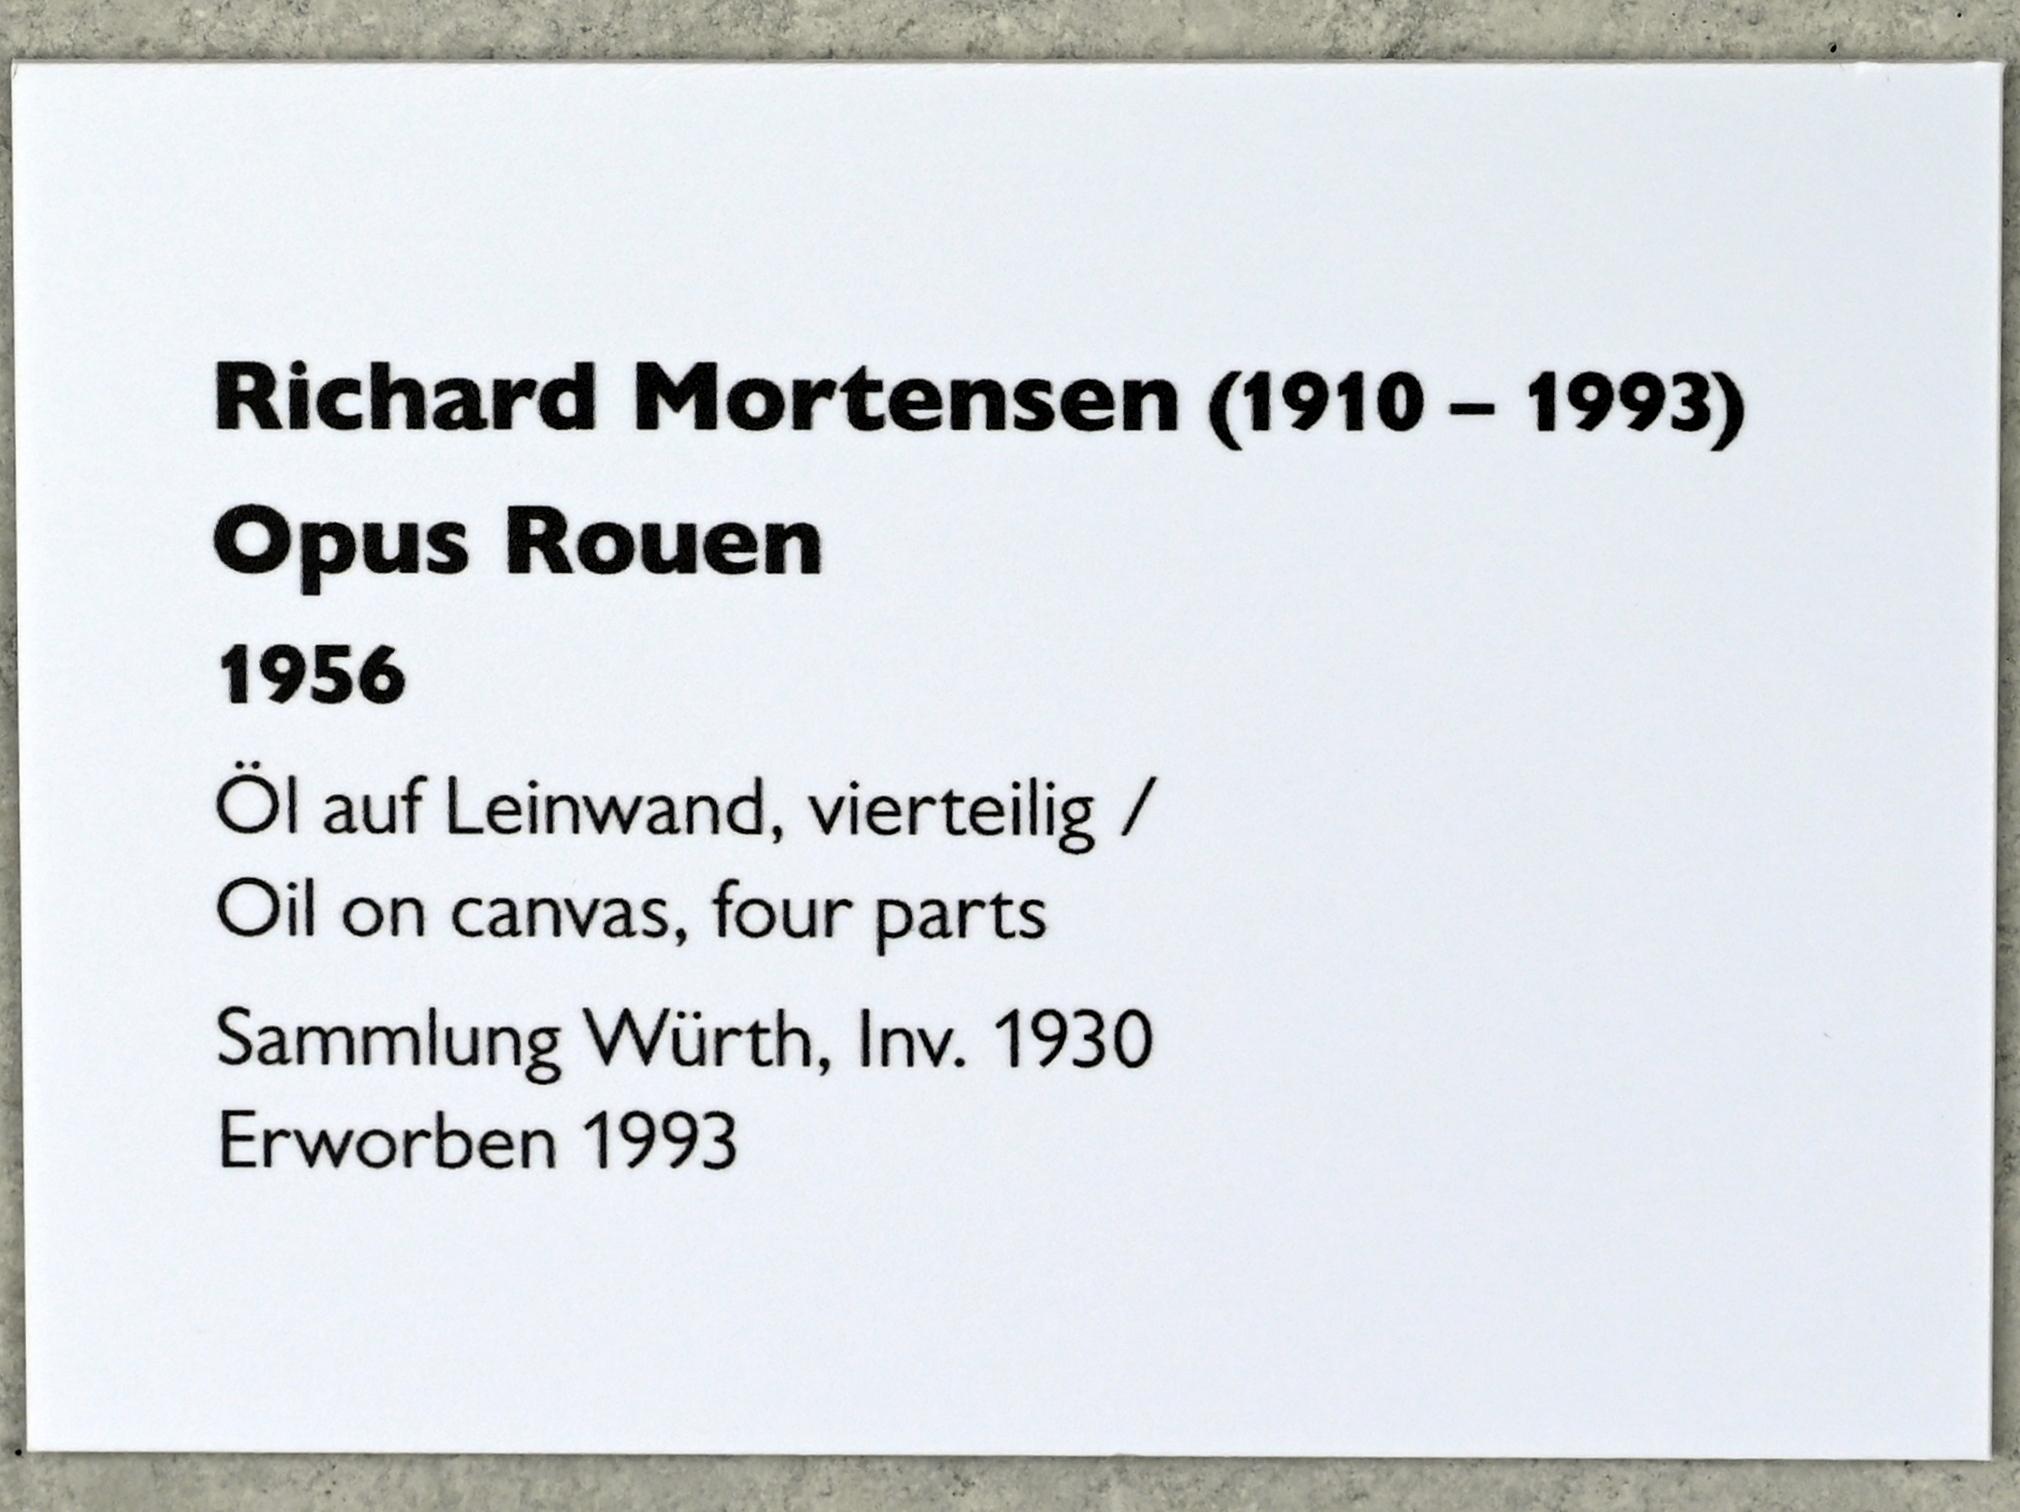 Richard Mortensen (1956–1969), Opus Rouen, Künzelsau, Museum Würth 2, Belvedere, 1956, Bild 2/2